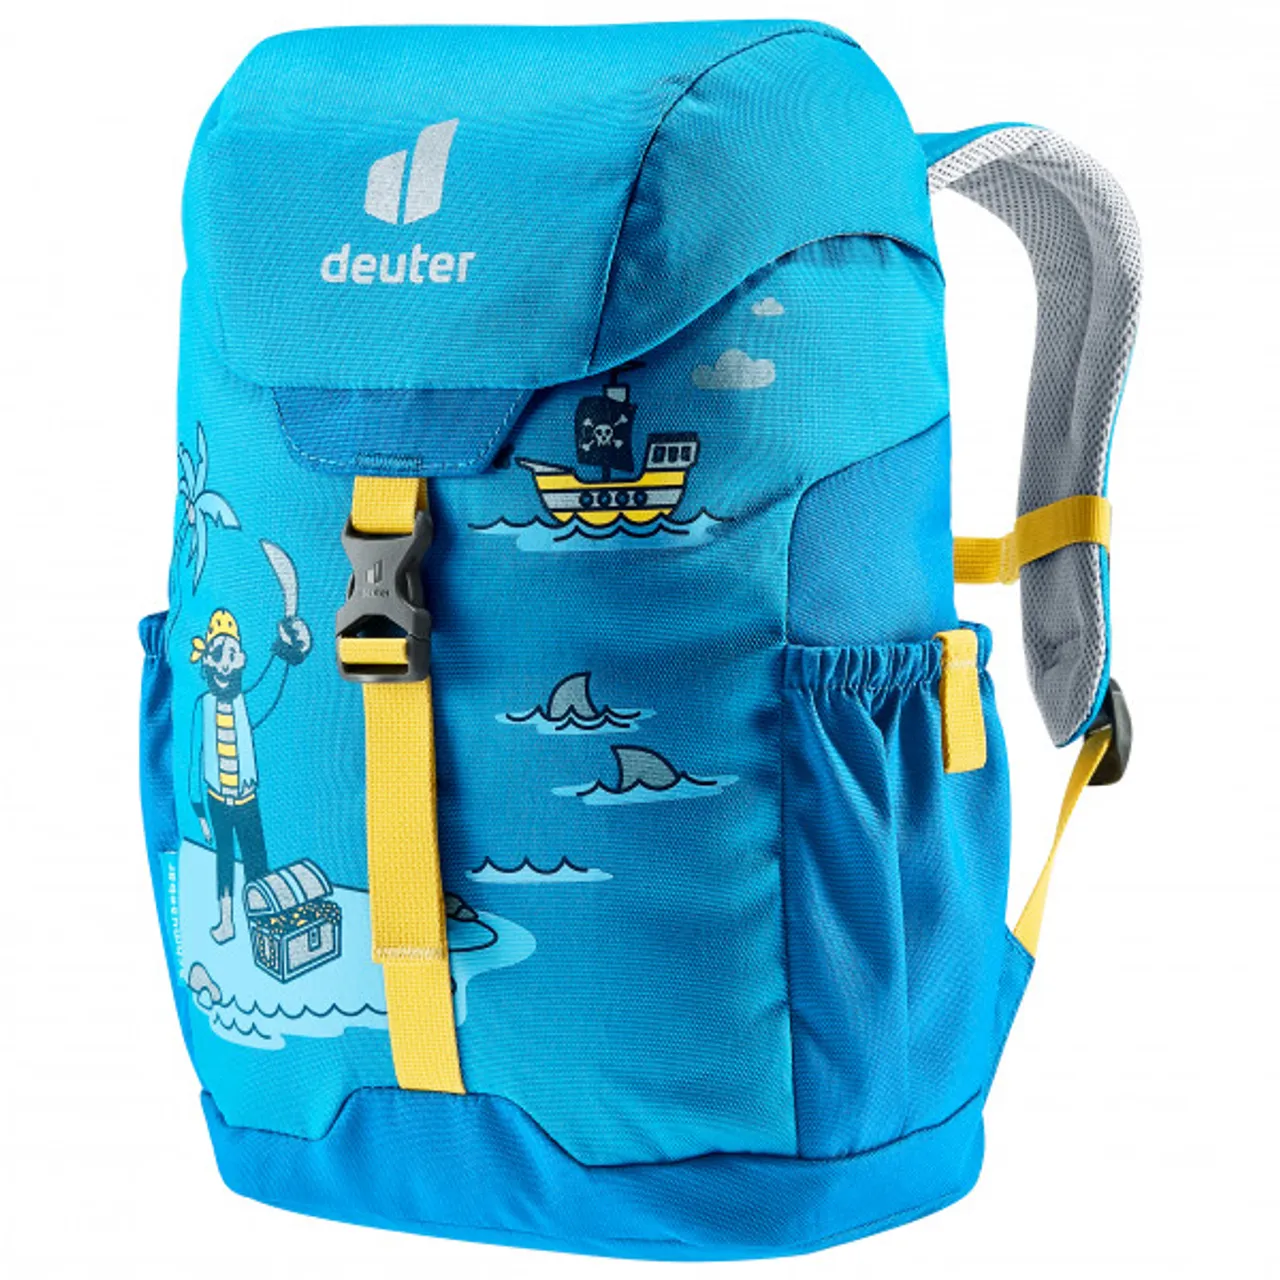 Deuter - Schmusebär 8 - Kids' backpack size 8 l, blue